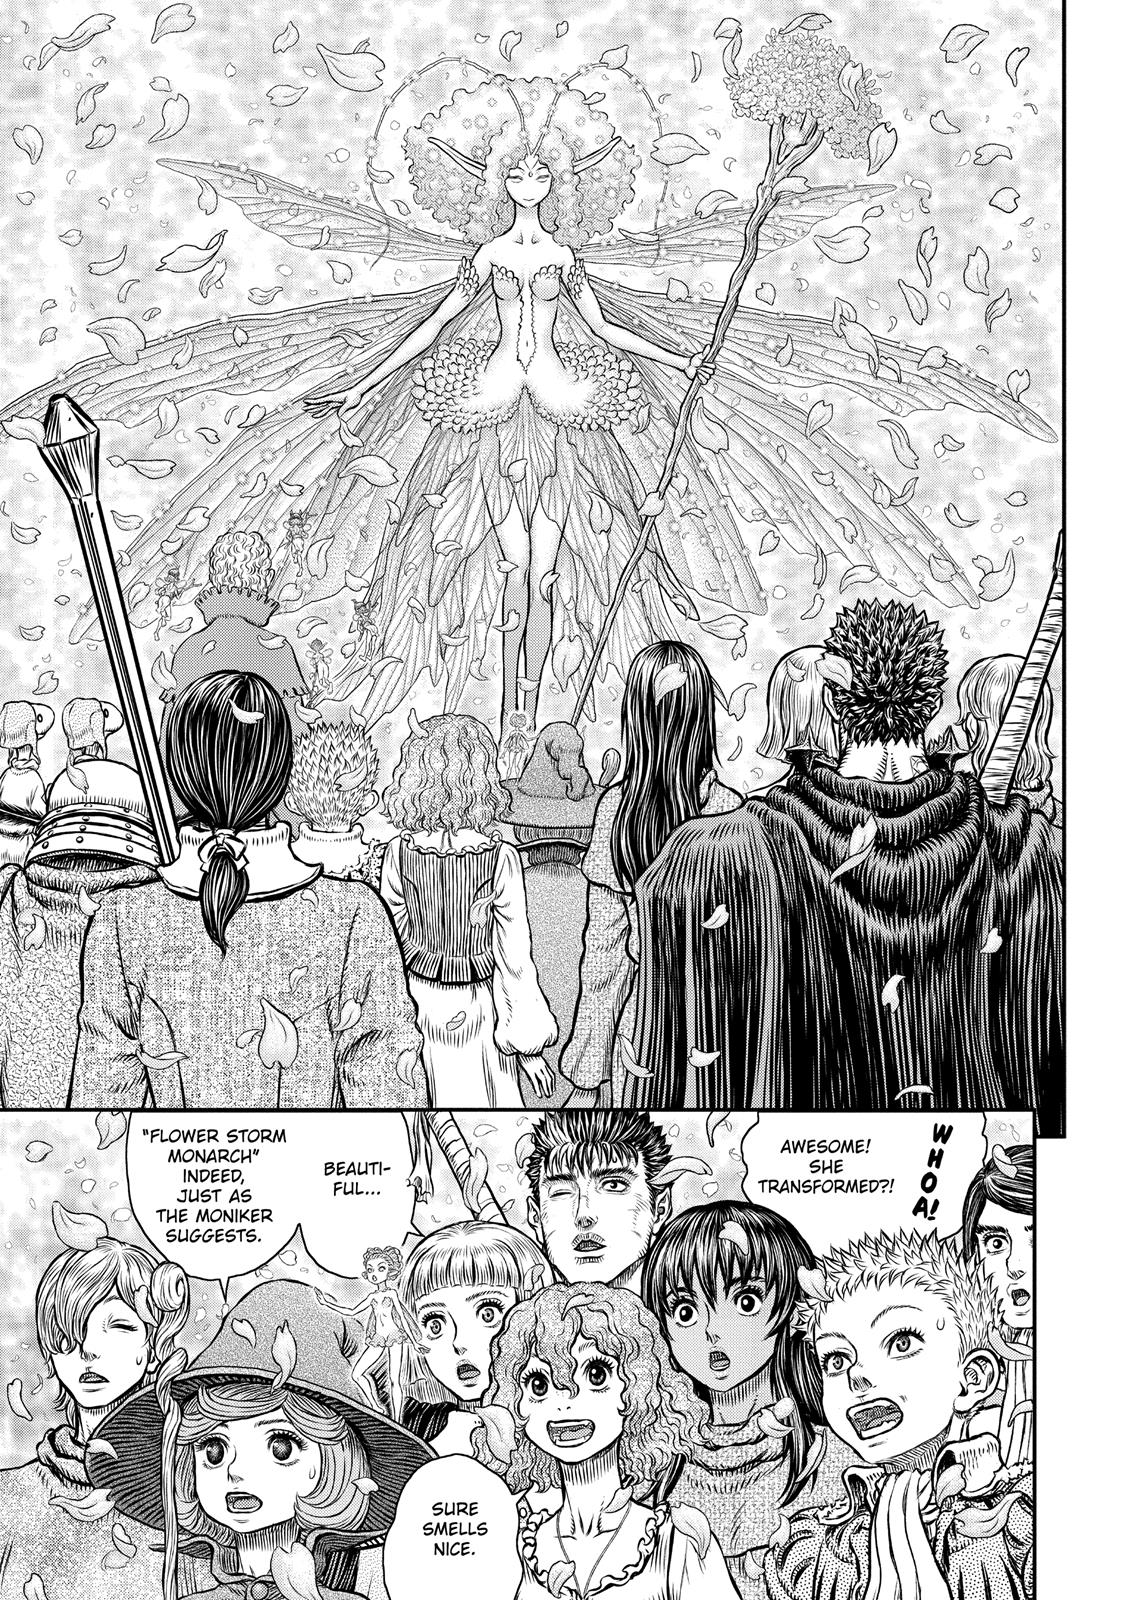 Berserk Manga Chapter 347 image 02